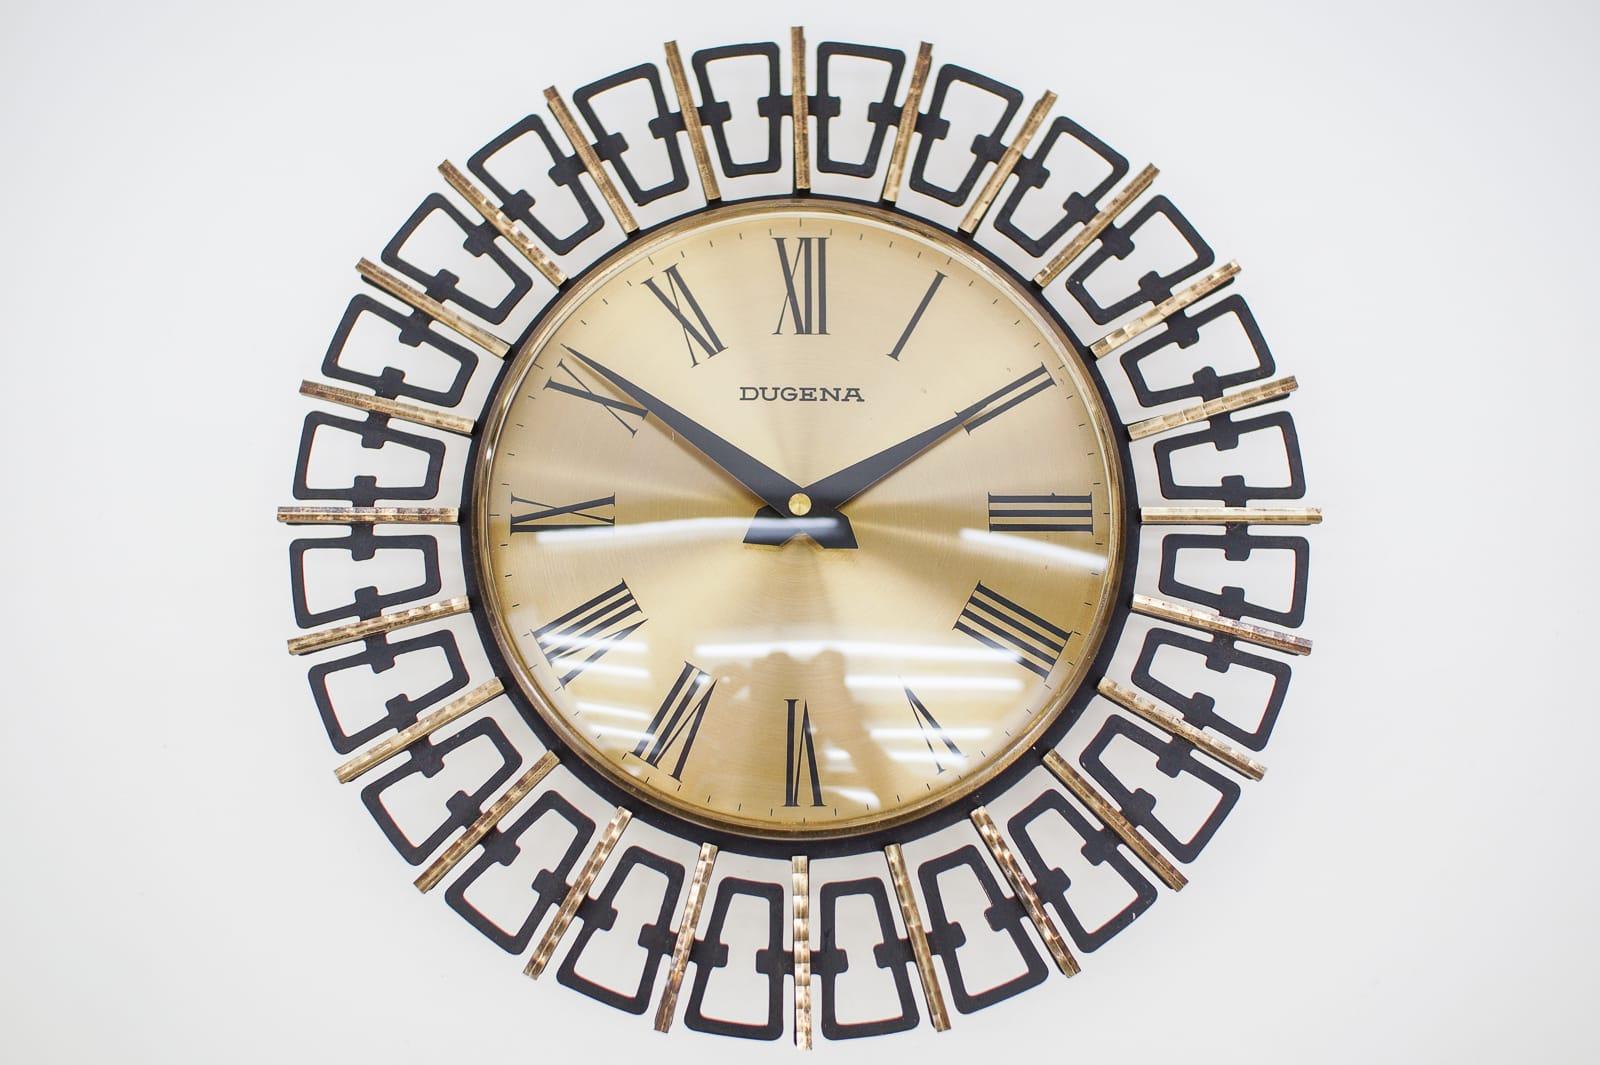 Superbe horloge murale en laiton, métal et verre. 

Un accroche-regard par excellence.

Fabriqué en Allemagne.

Horloge électrique à piles.